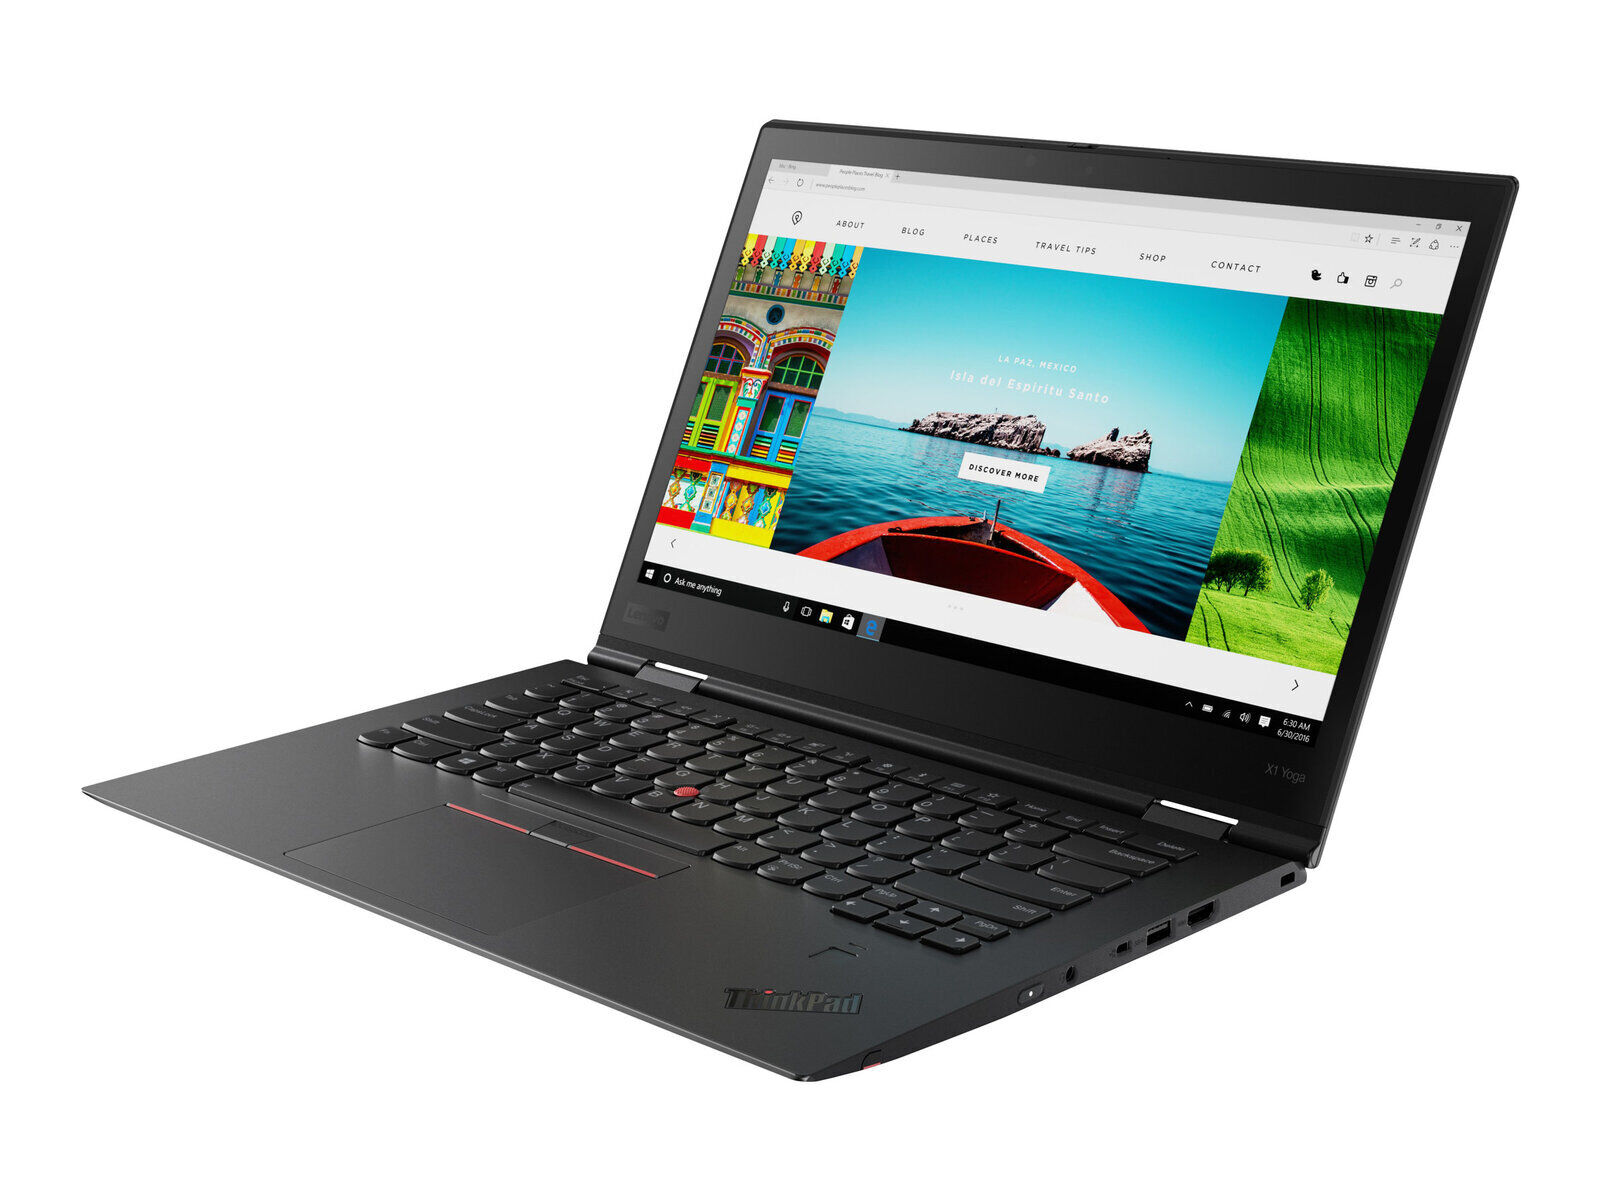 Lenovo ThinkPad X1 Yoga 3rd Gen i7 8550U 1.80GHz 16GB RAM 512GB SSD LTE 14" FHD Touch- Refurbished Laptop